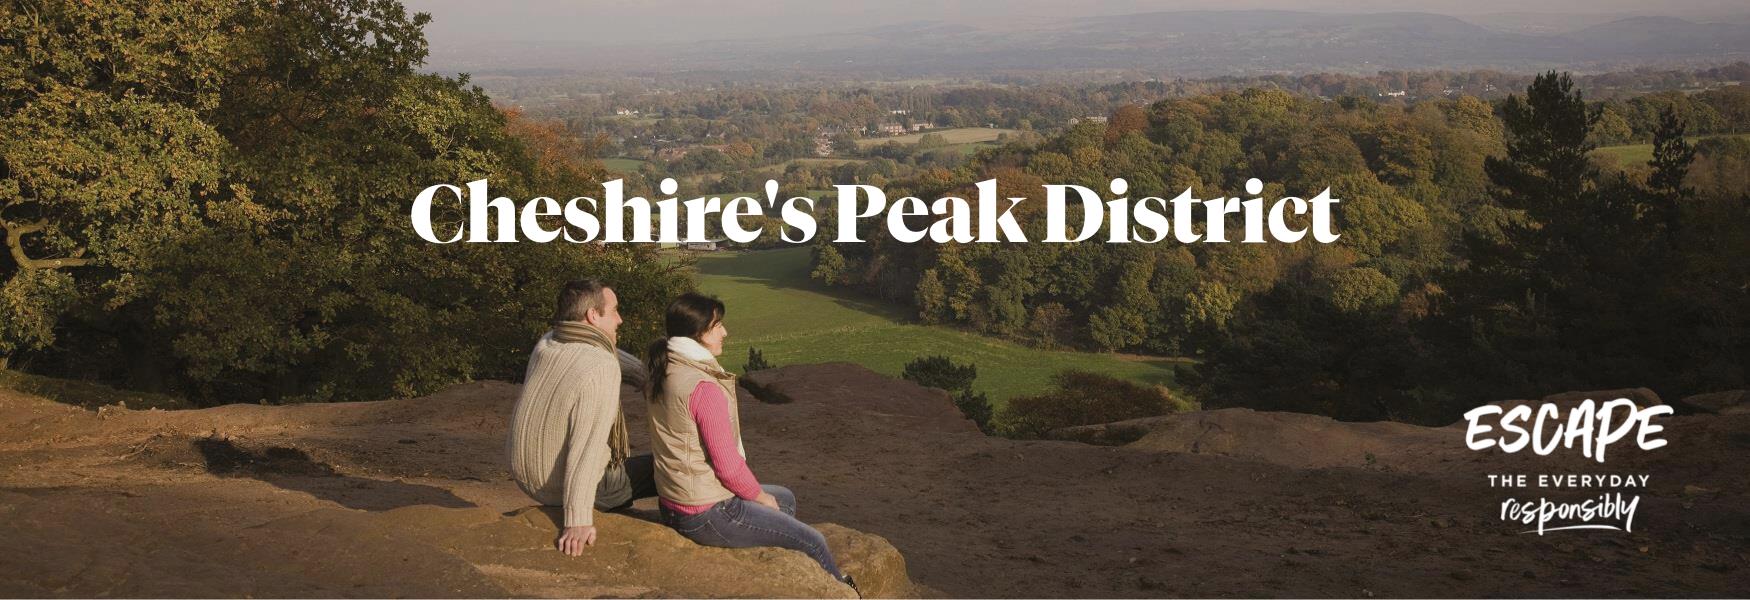 Cheshire's Peak District